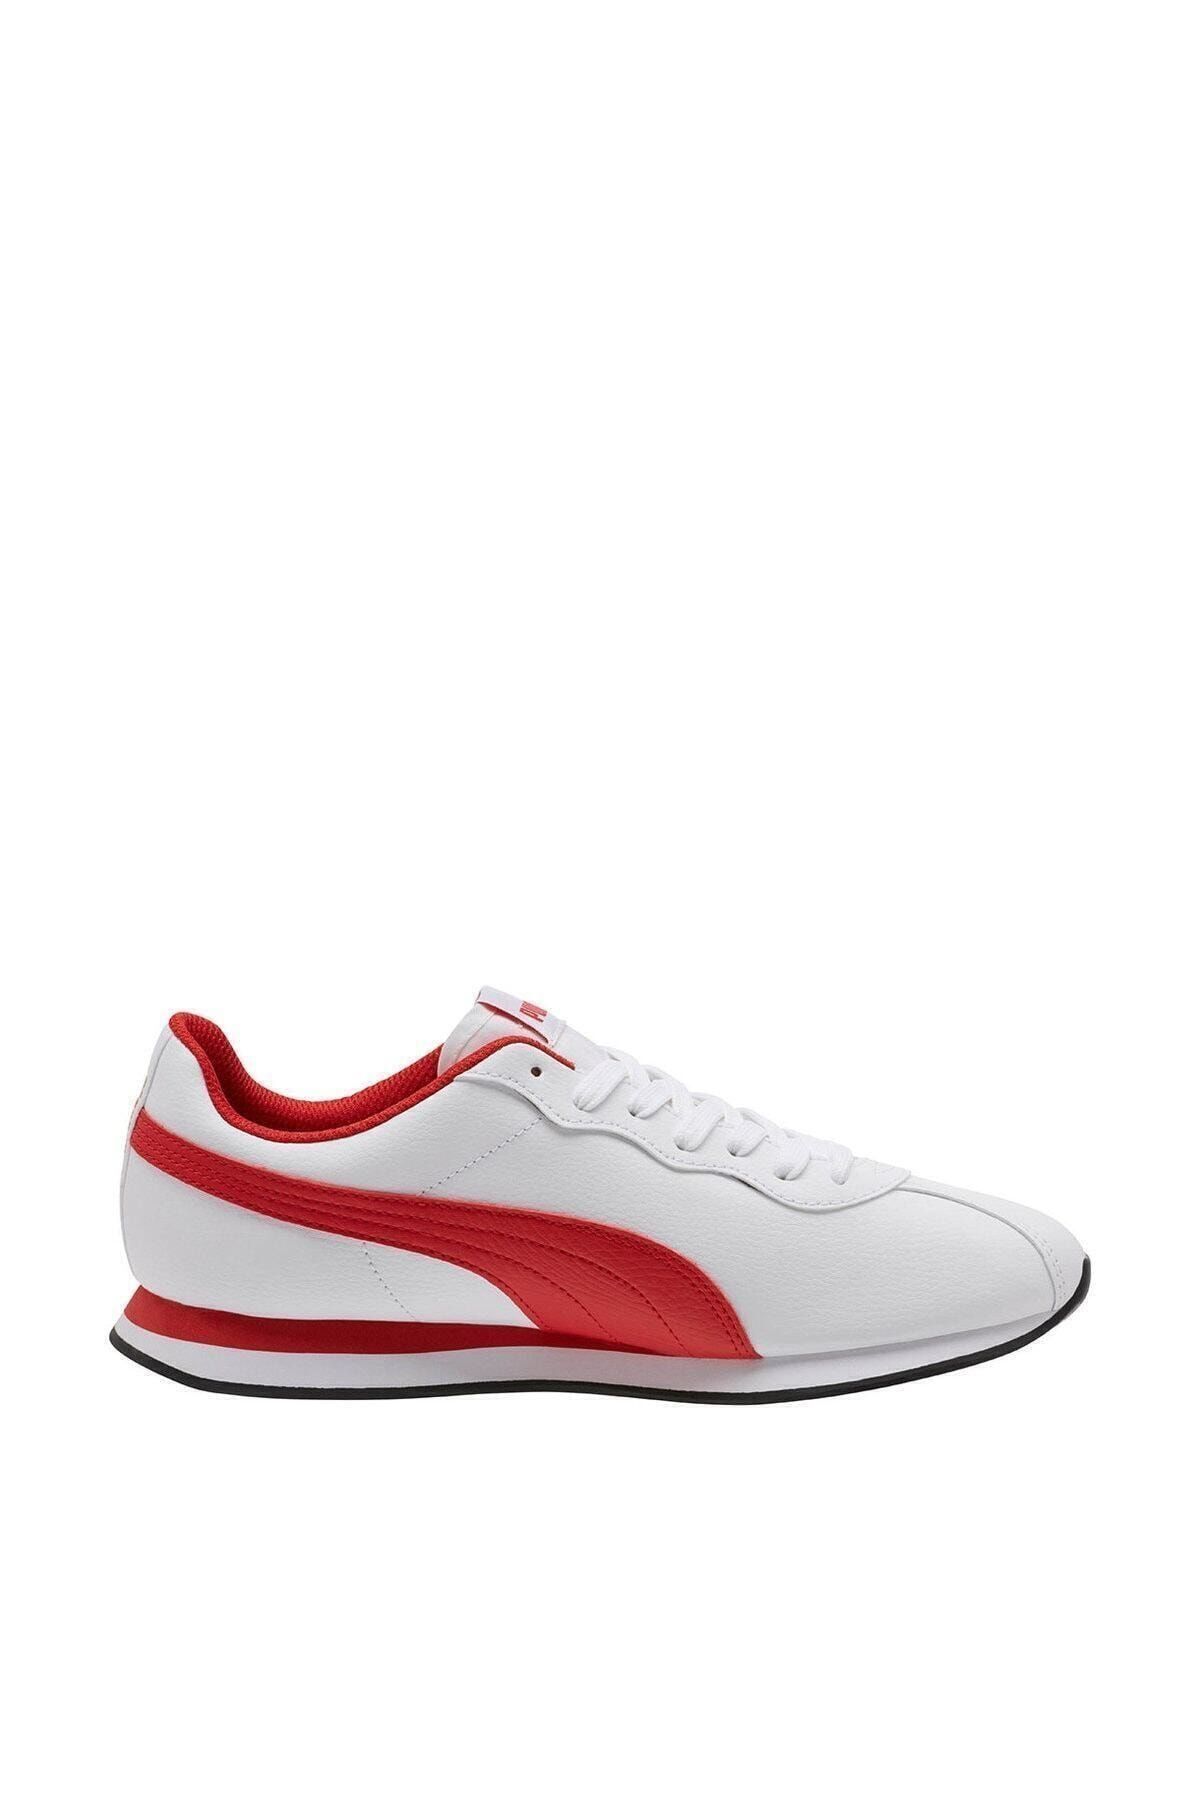 Puma TURIN II Beyaz Erkek Sneaker Ayakkabı 100415116